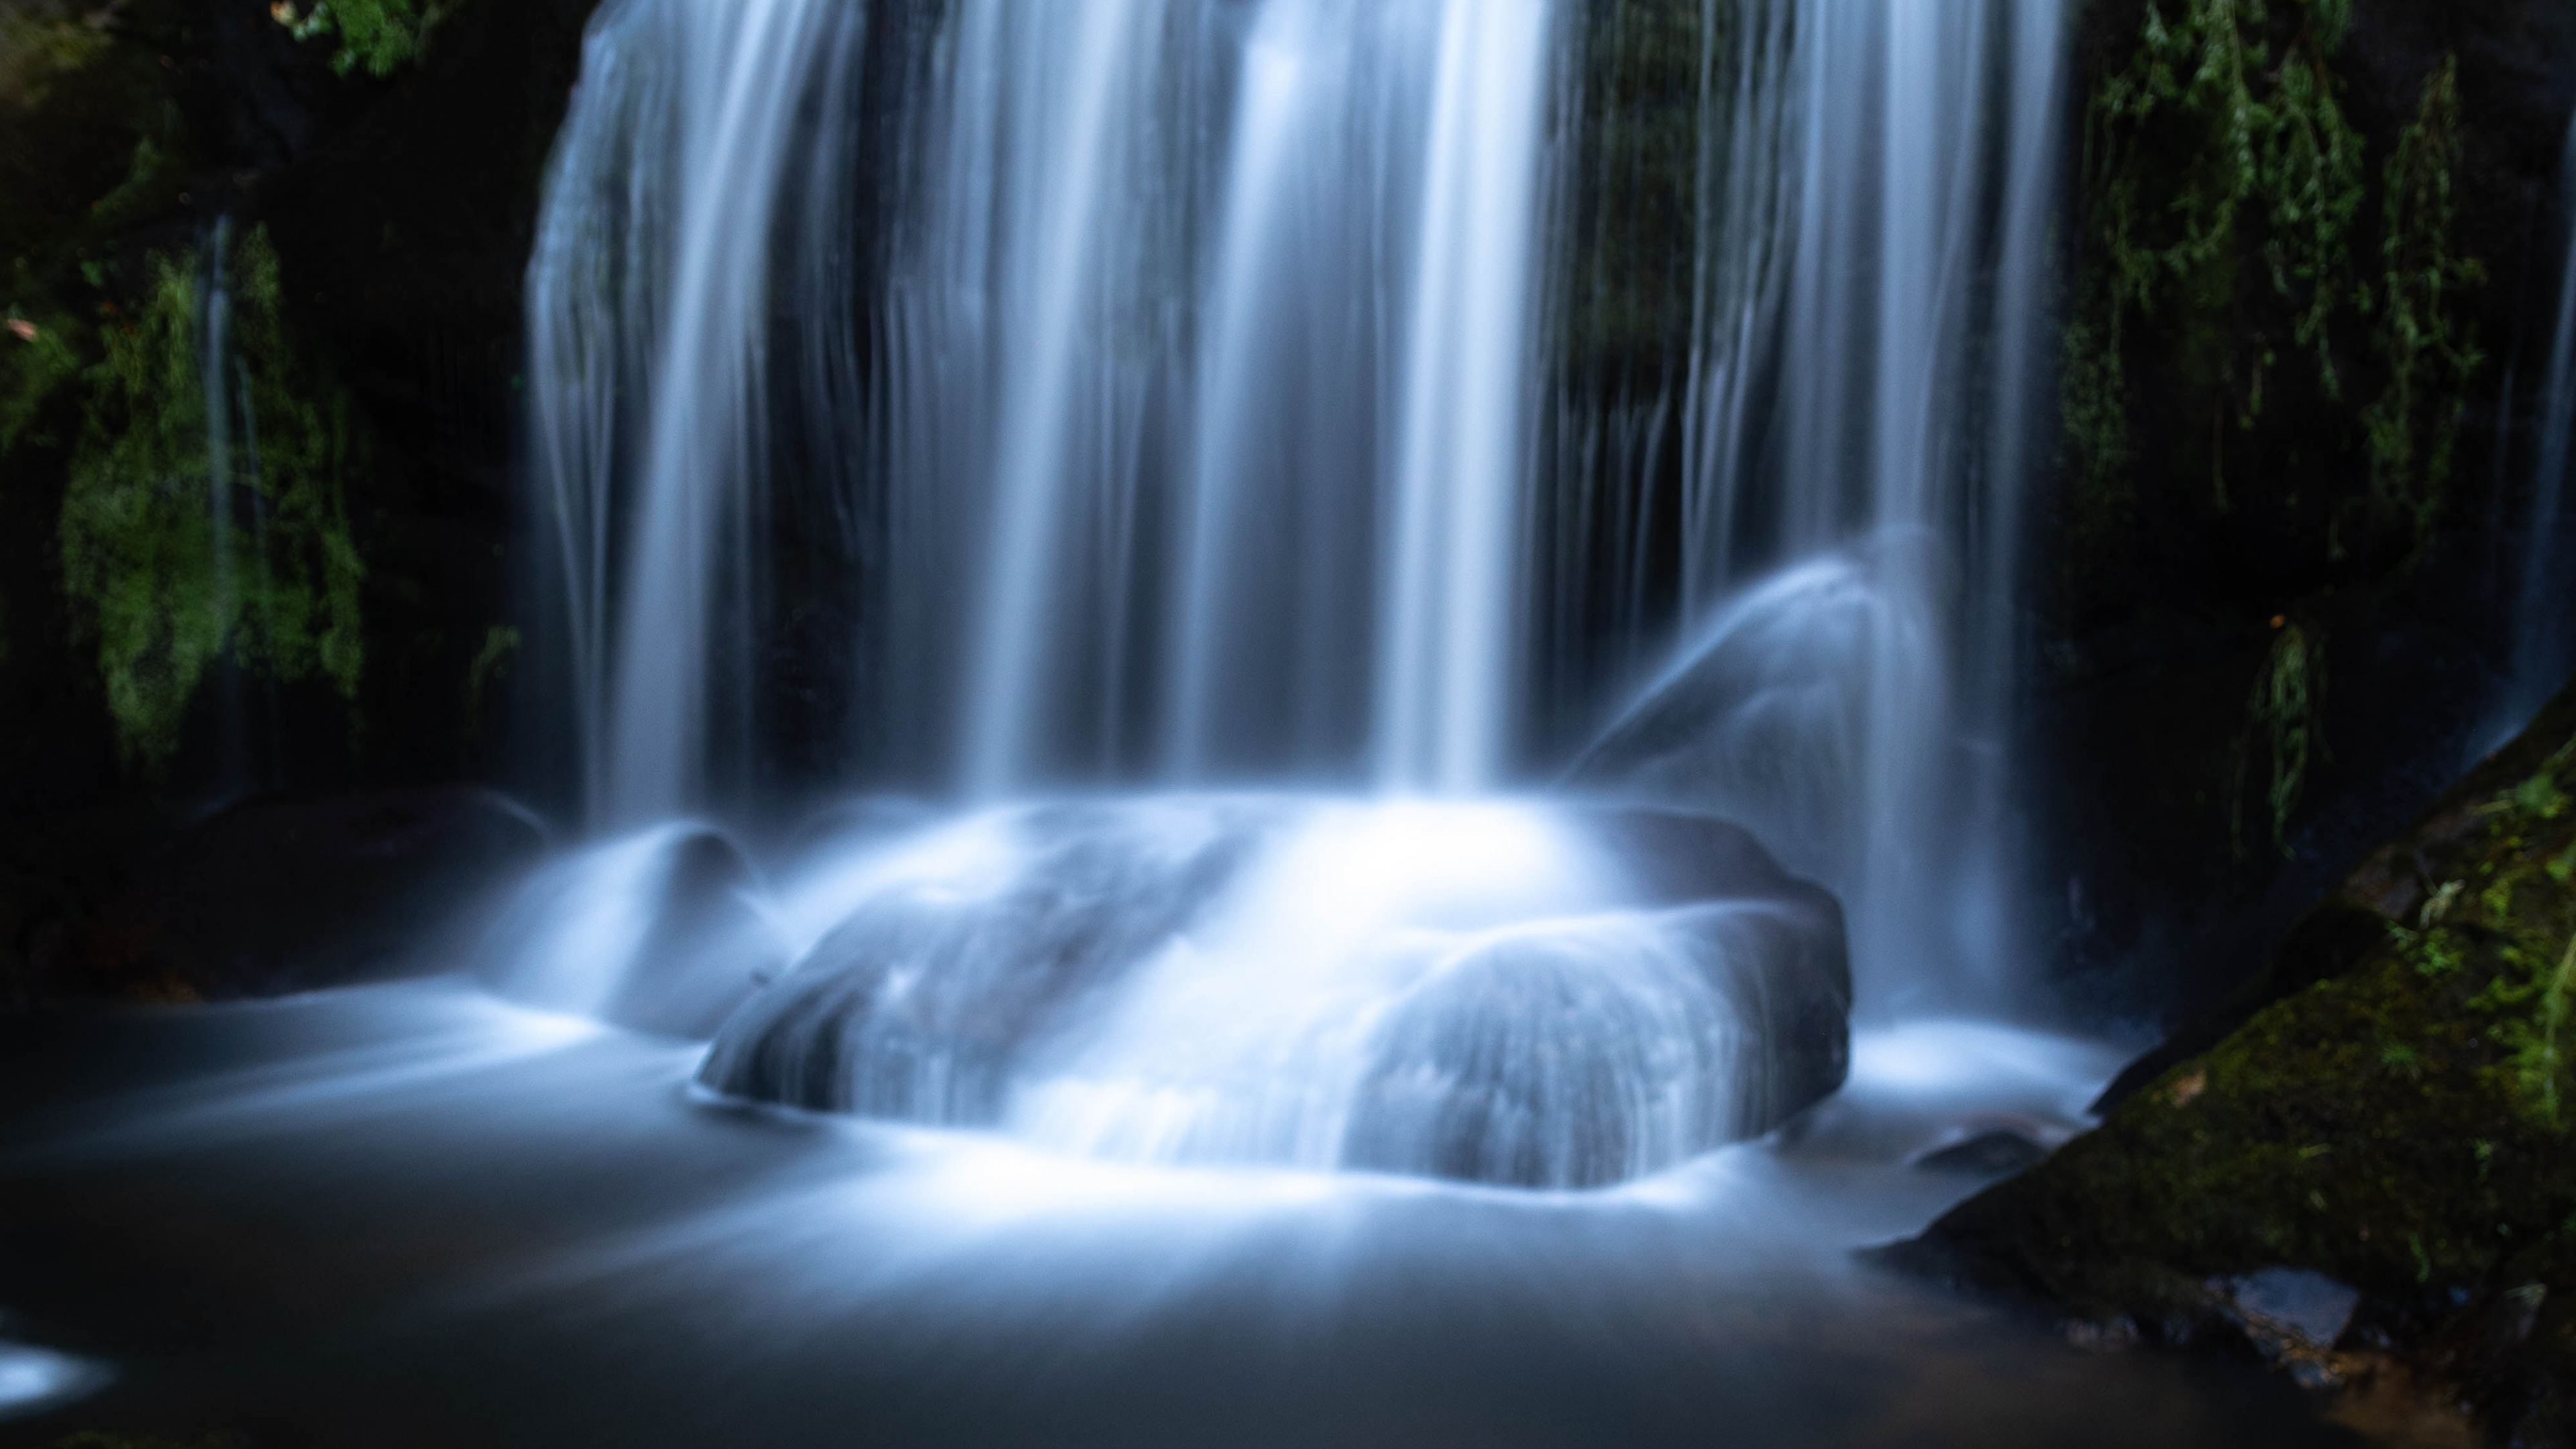 Wasserfall, Gewässer, Wasserressourcen, Naturlandschaft, Natur. Wallpaper in 3840x2160 Resolution